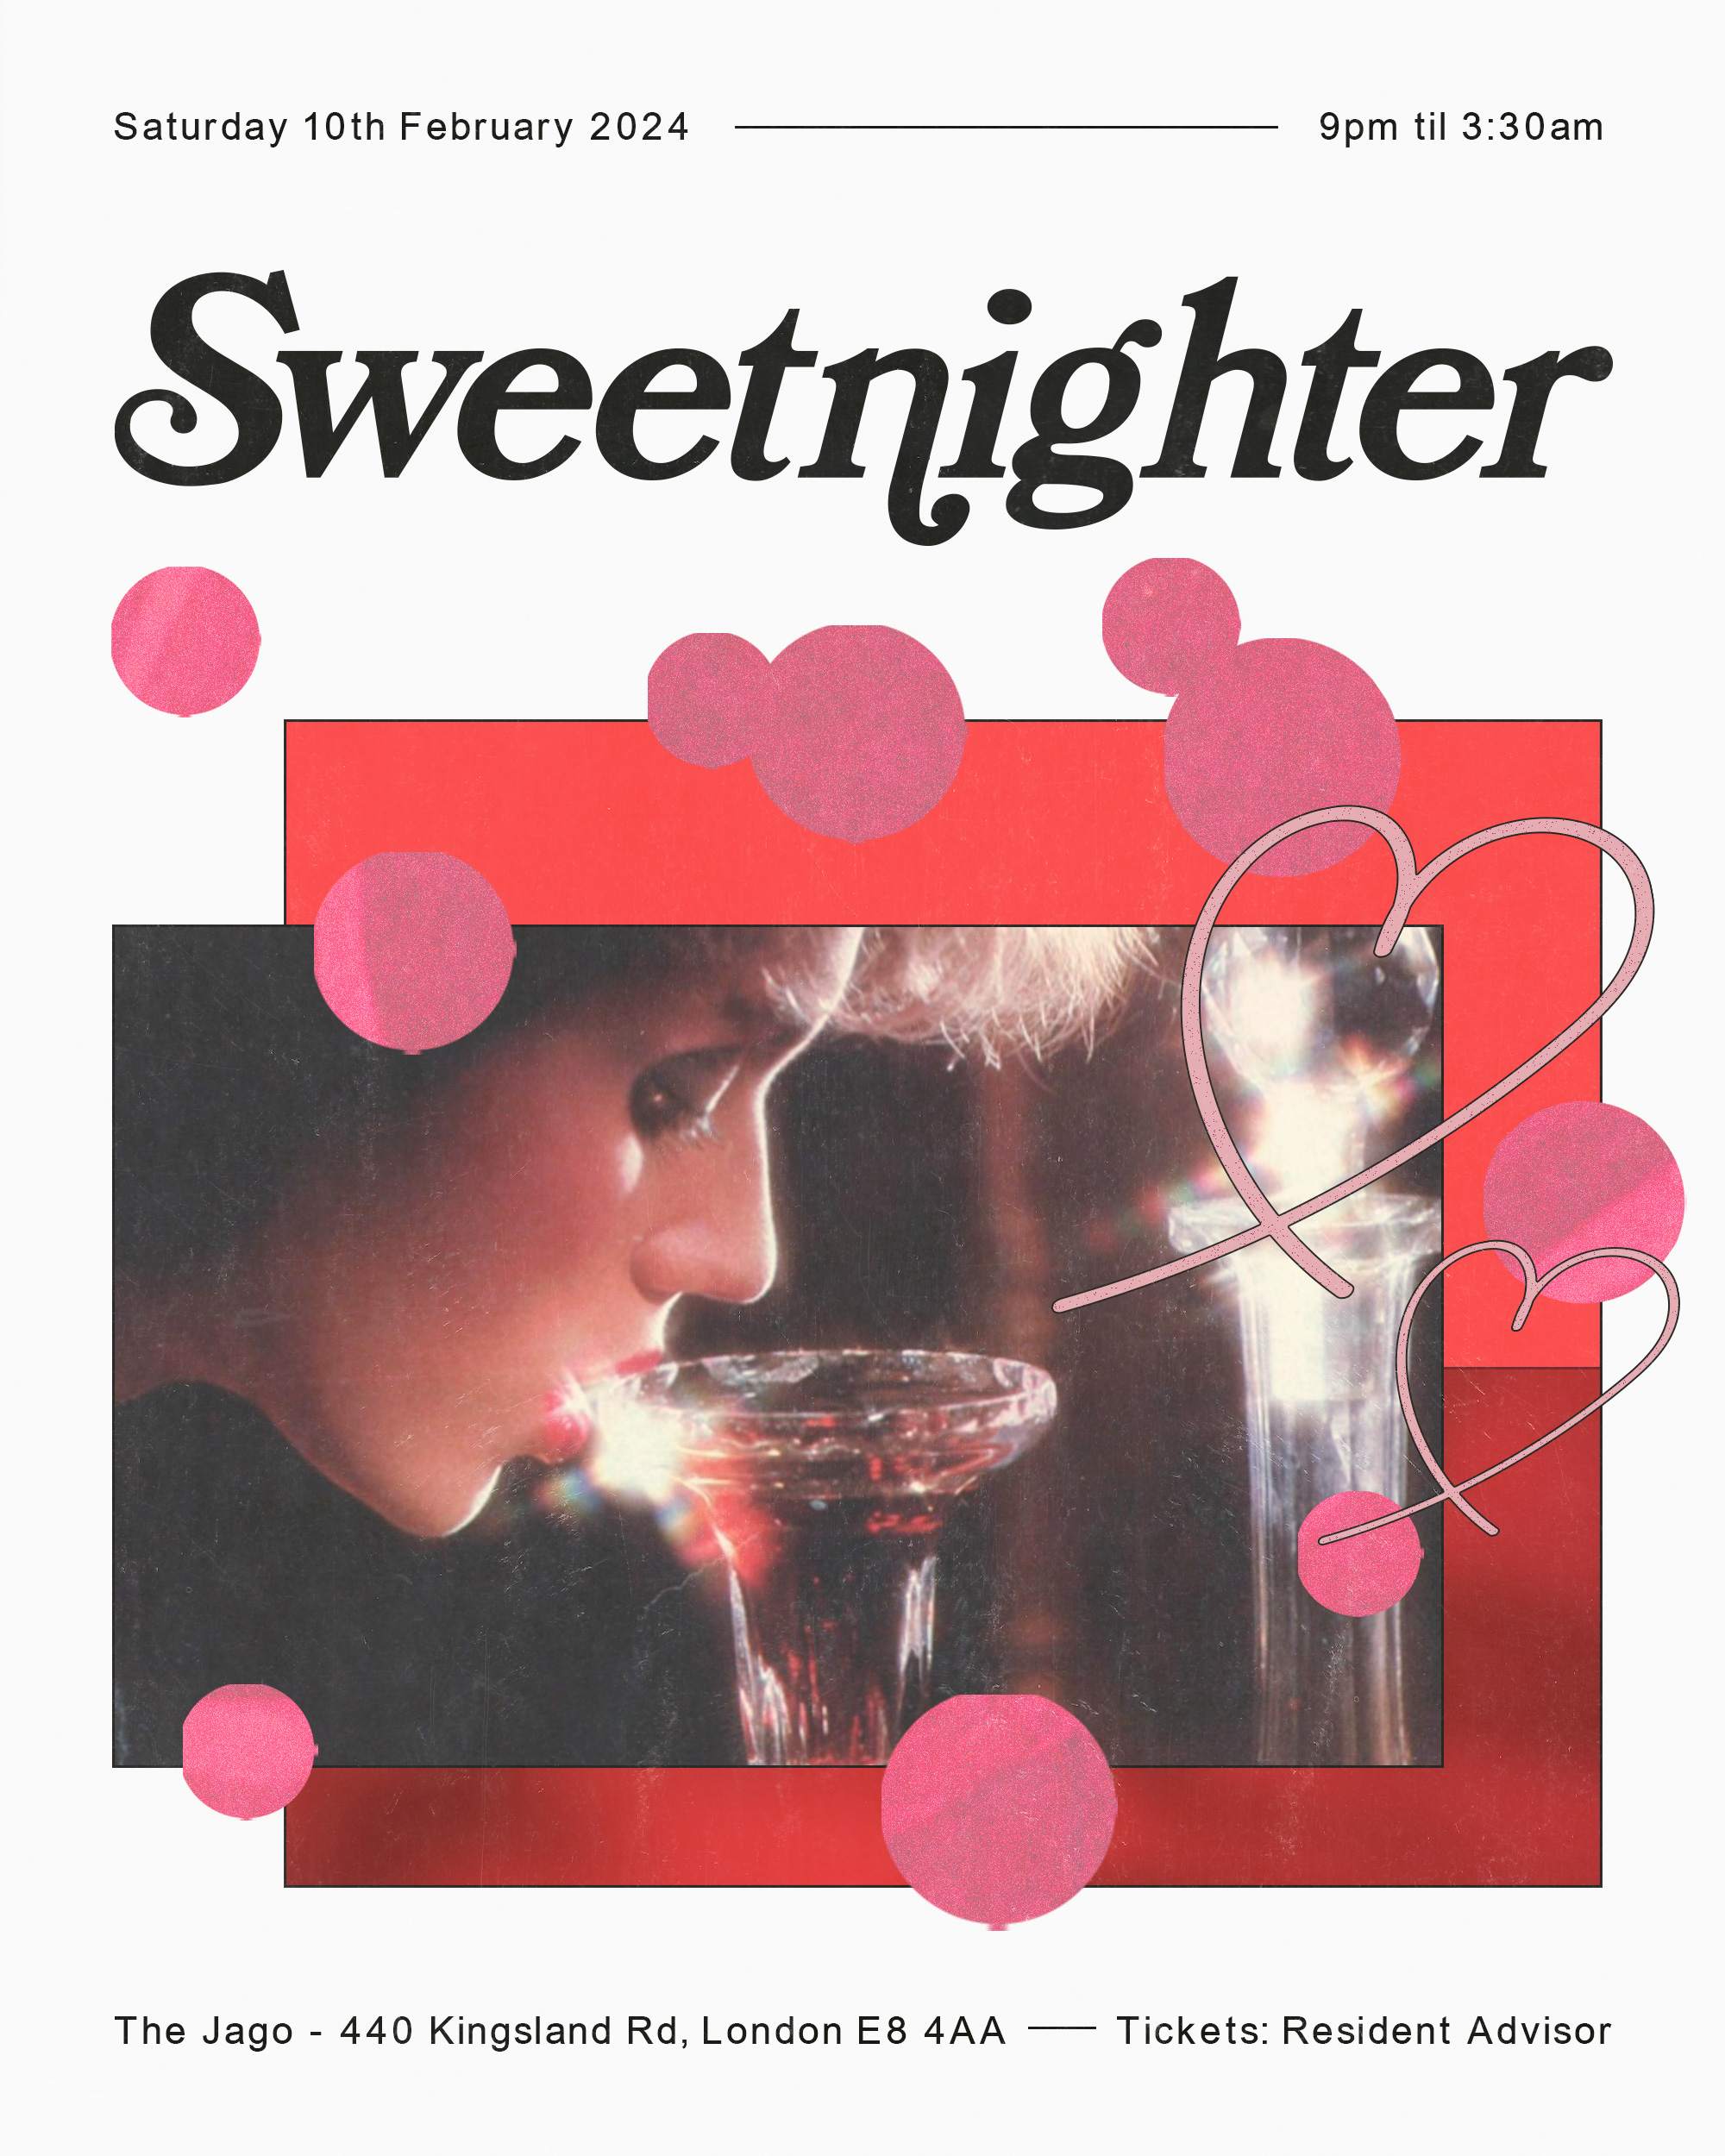 Sweetnighter - Página trasera